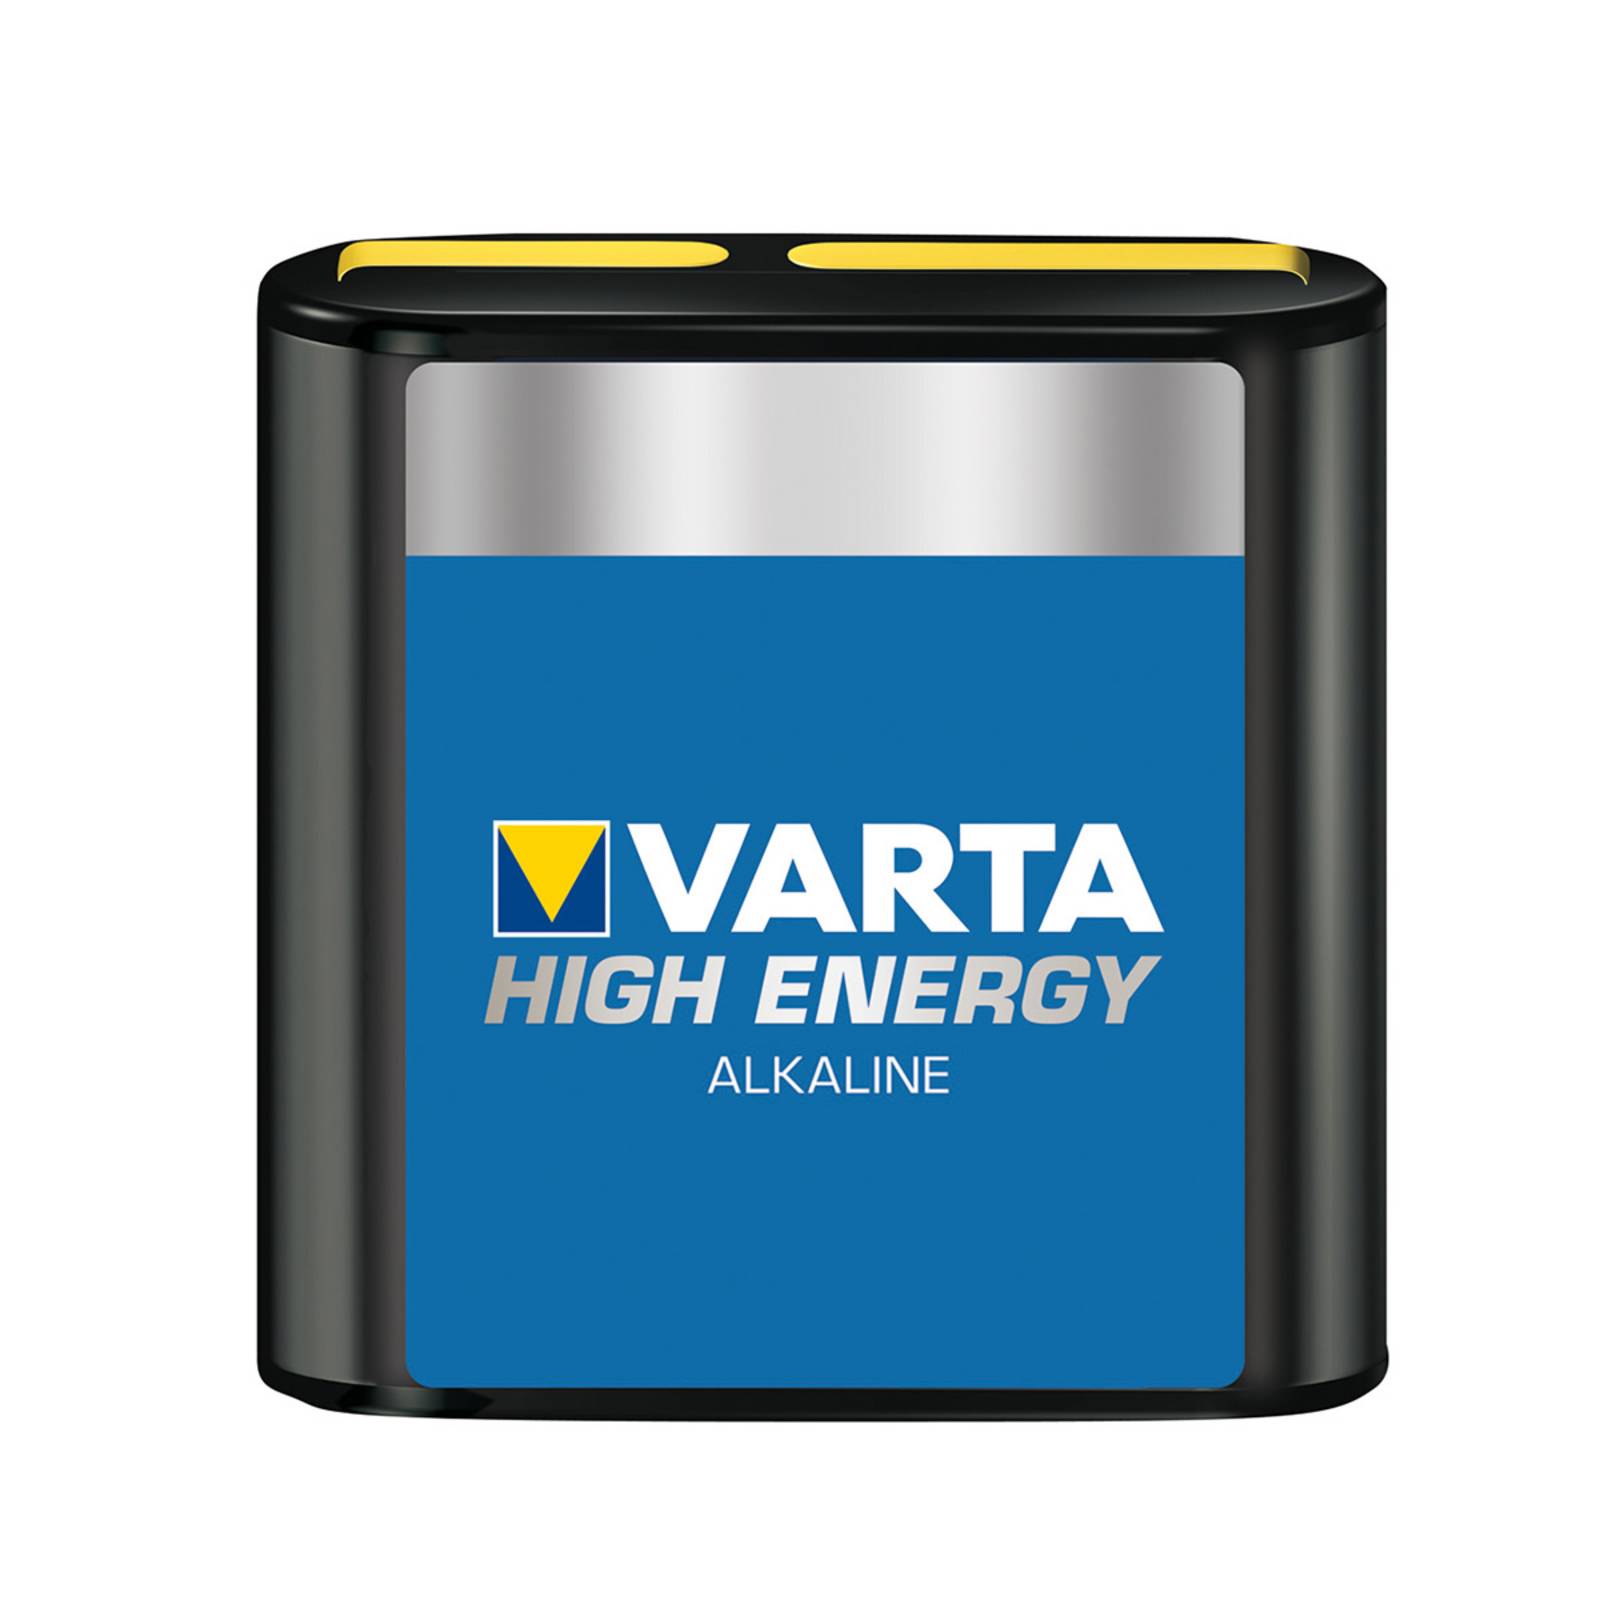 Varta High Energy 4,5V Batterie für Flachleuchten